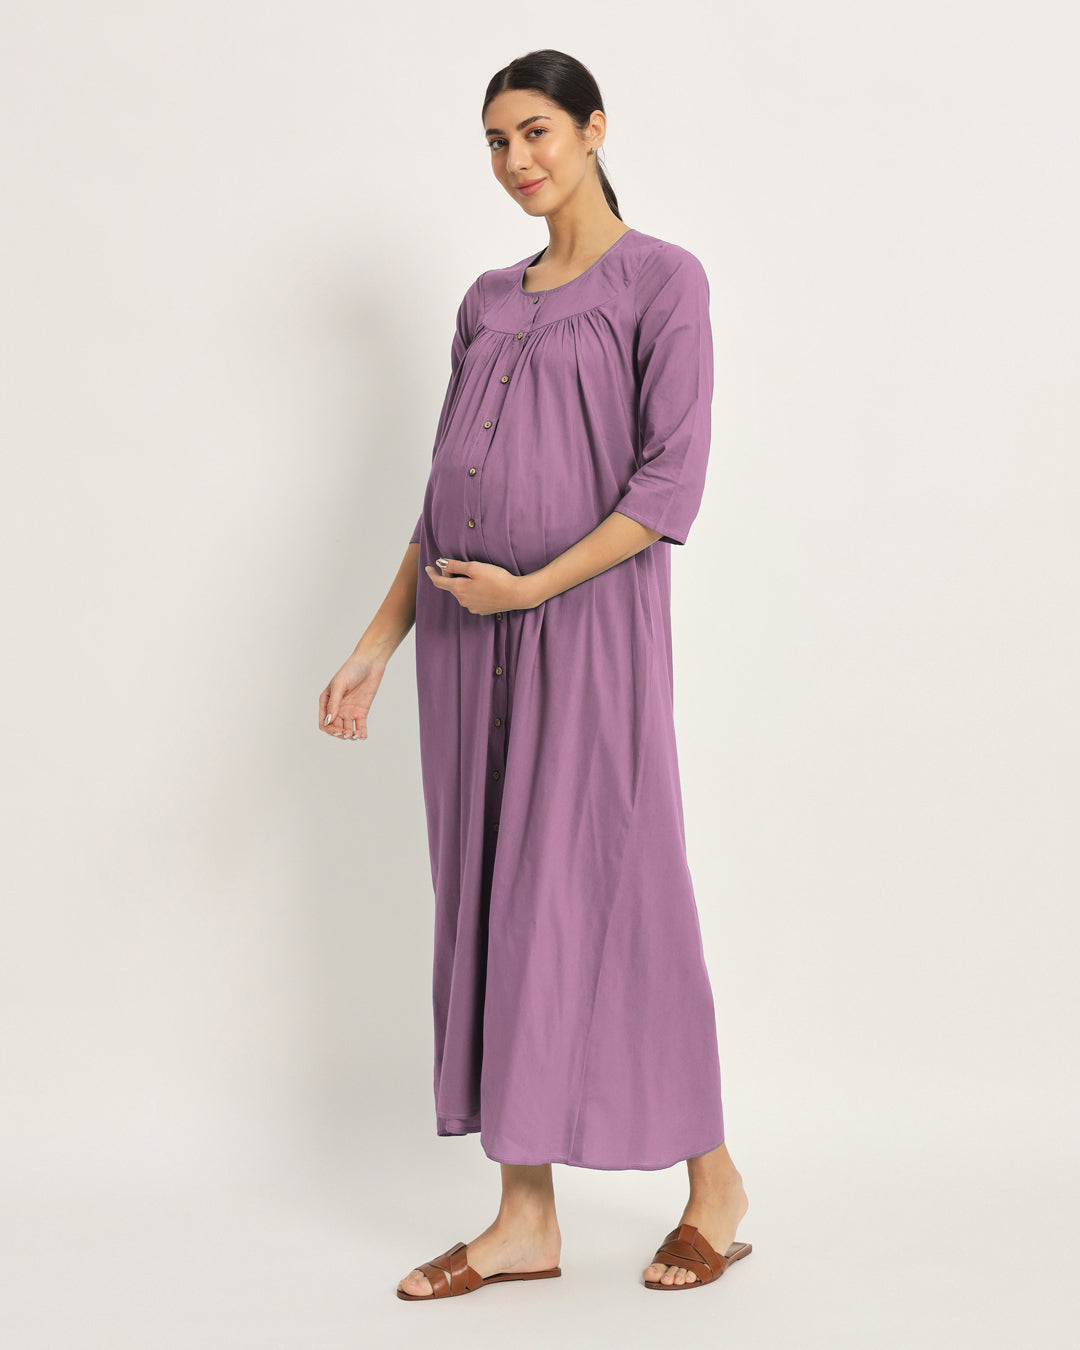 Combo: Iris Pink & Lilac Mommy Glow Maternity & Nursing Dress